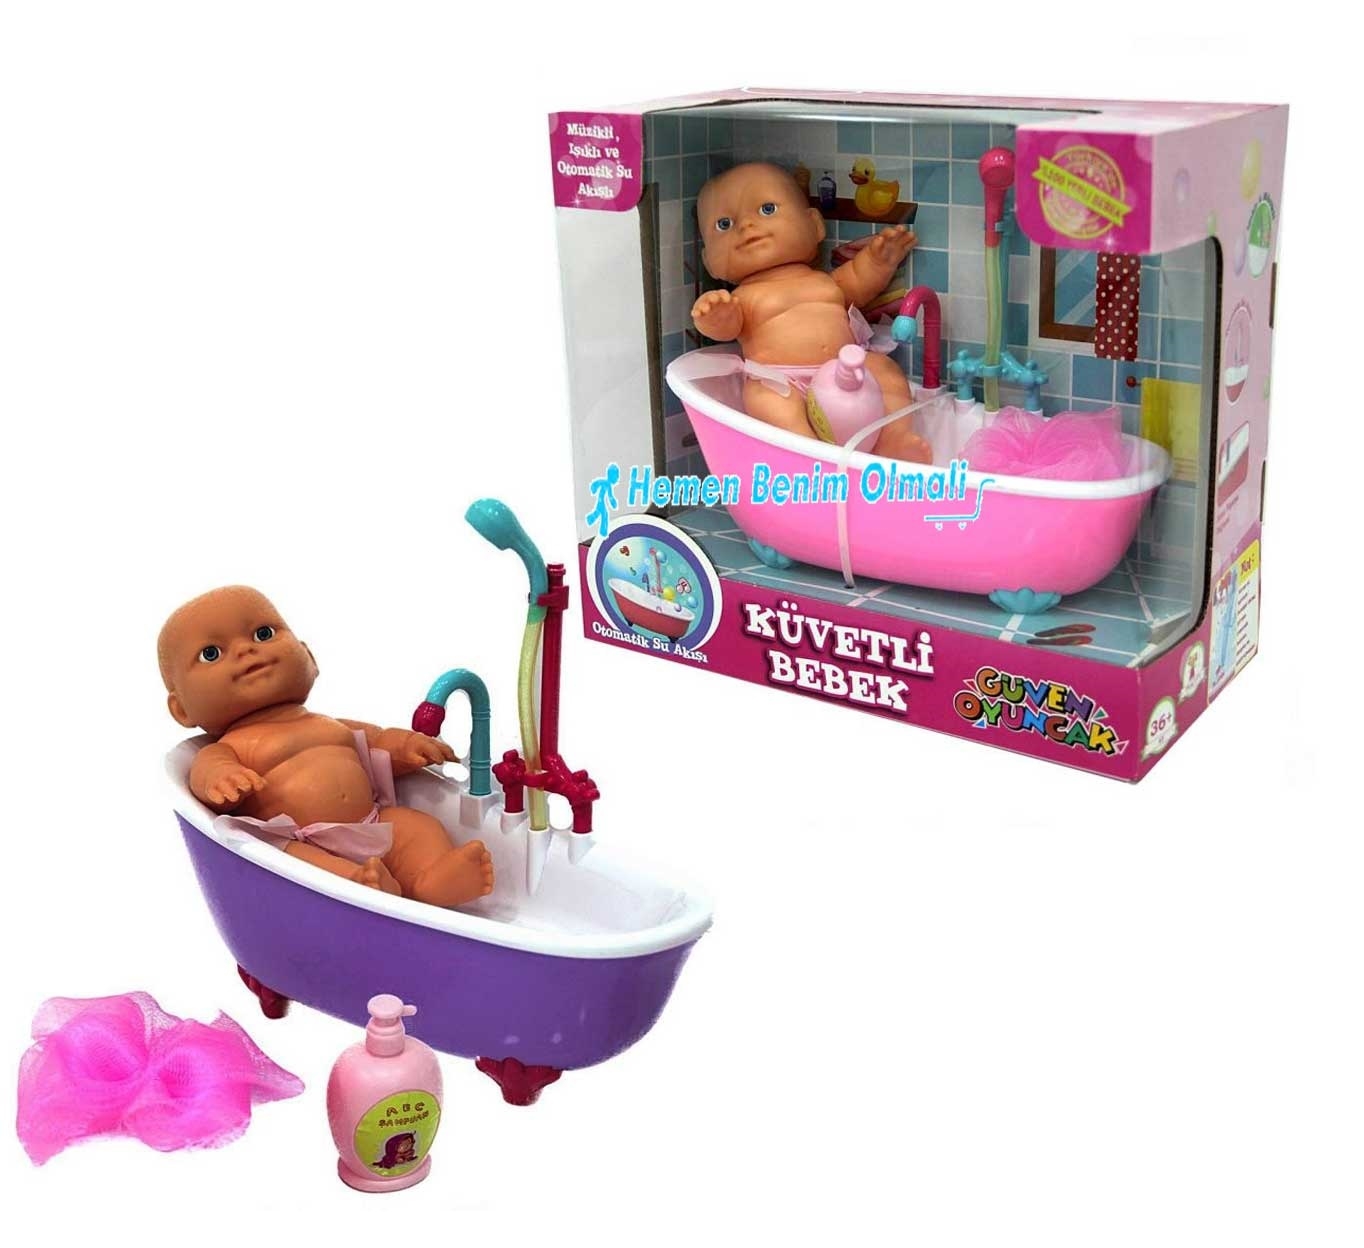 neden olmasın bağlantı üçlü  Oyuncak Pilli Küvette Duş Yapan Bebek Çeşitleri En Ucuzu Fiyata  Hediyecik.com'da